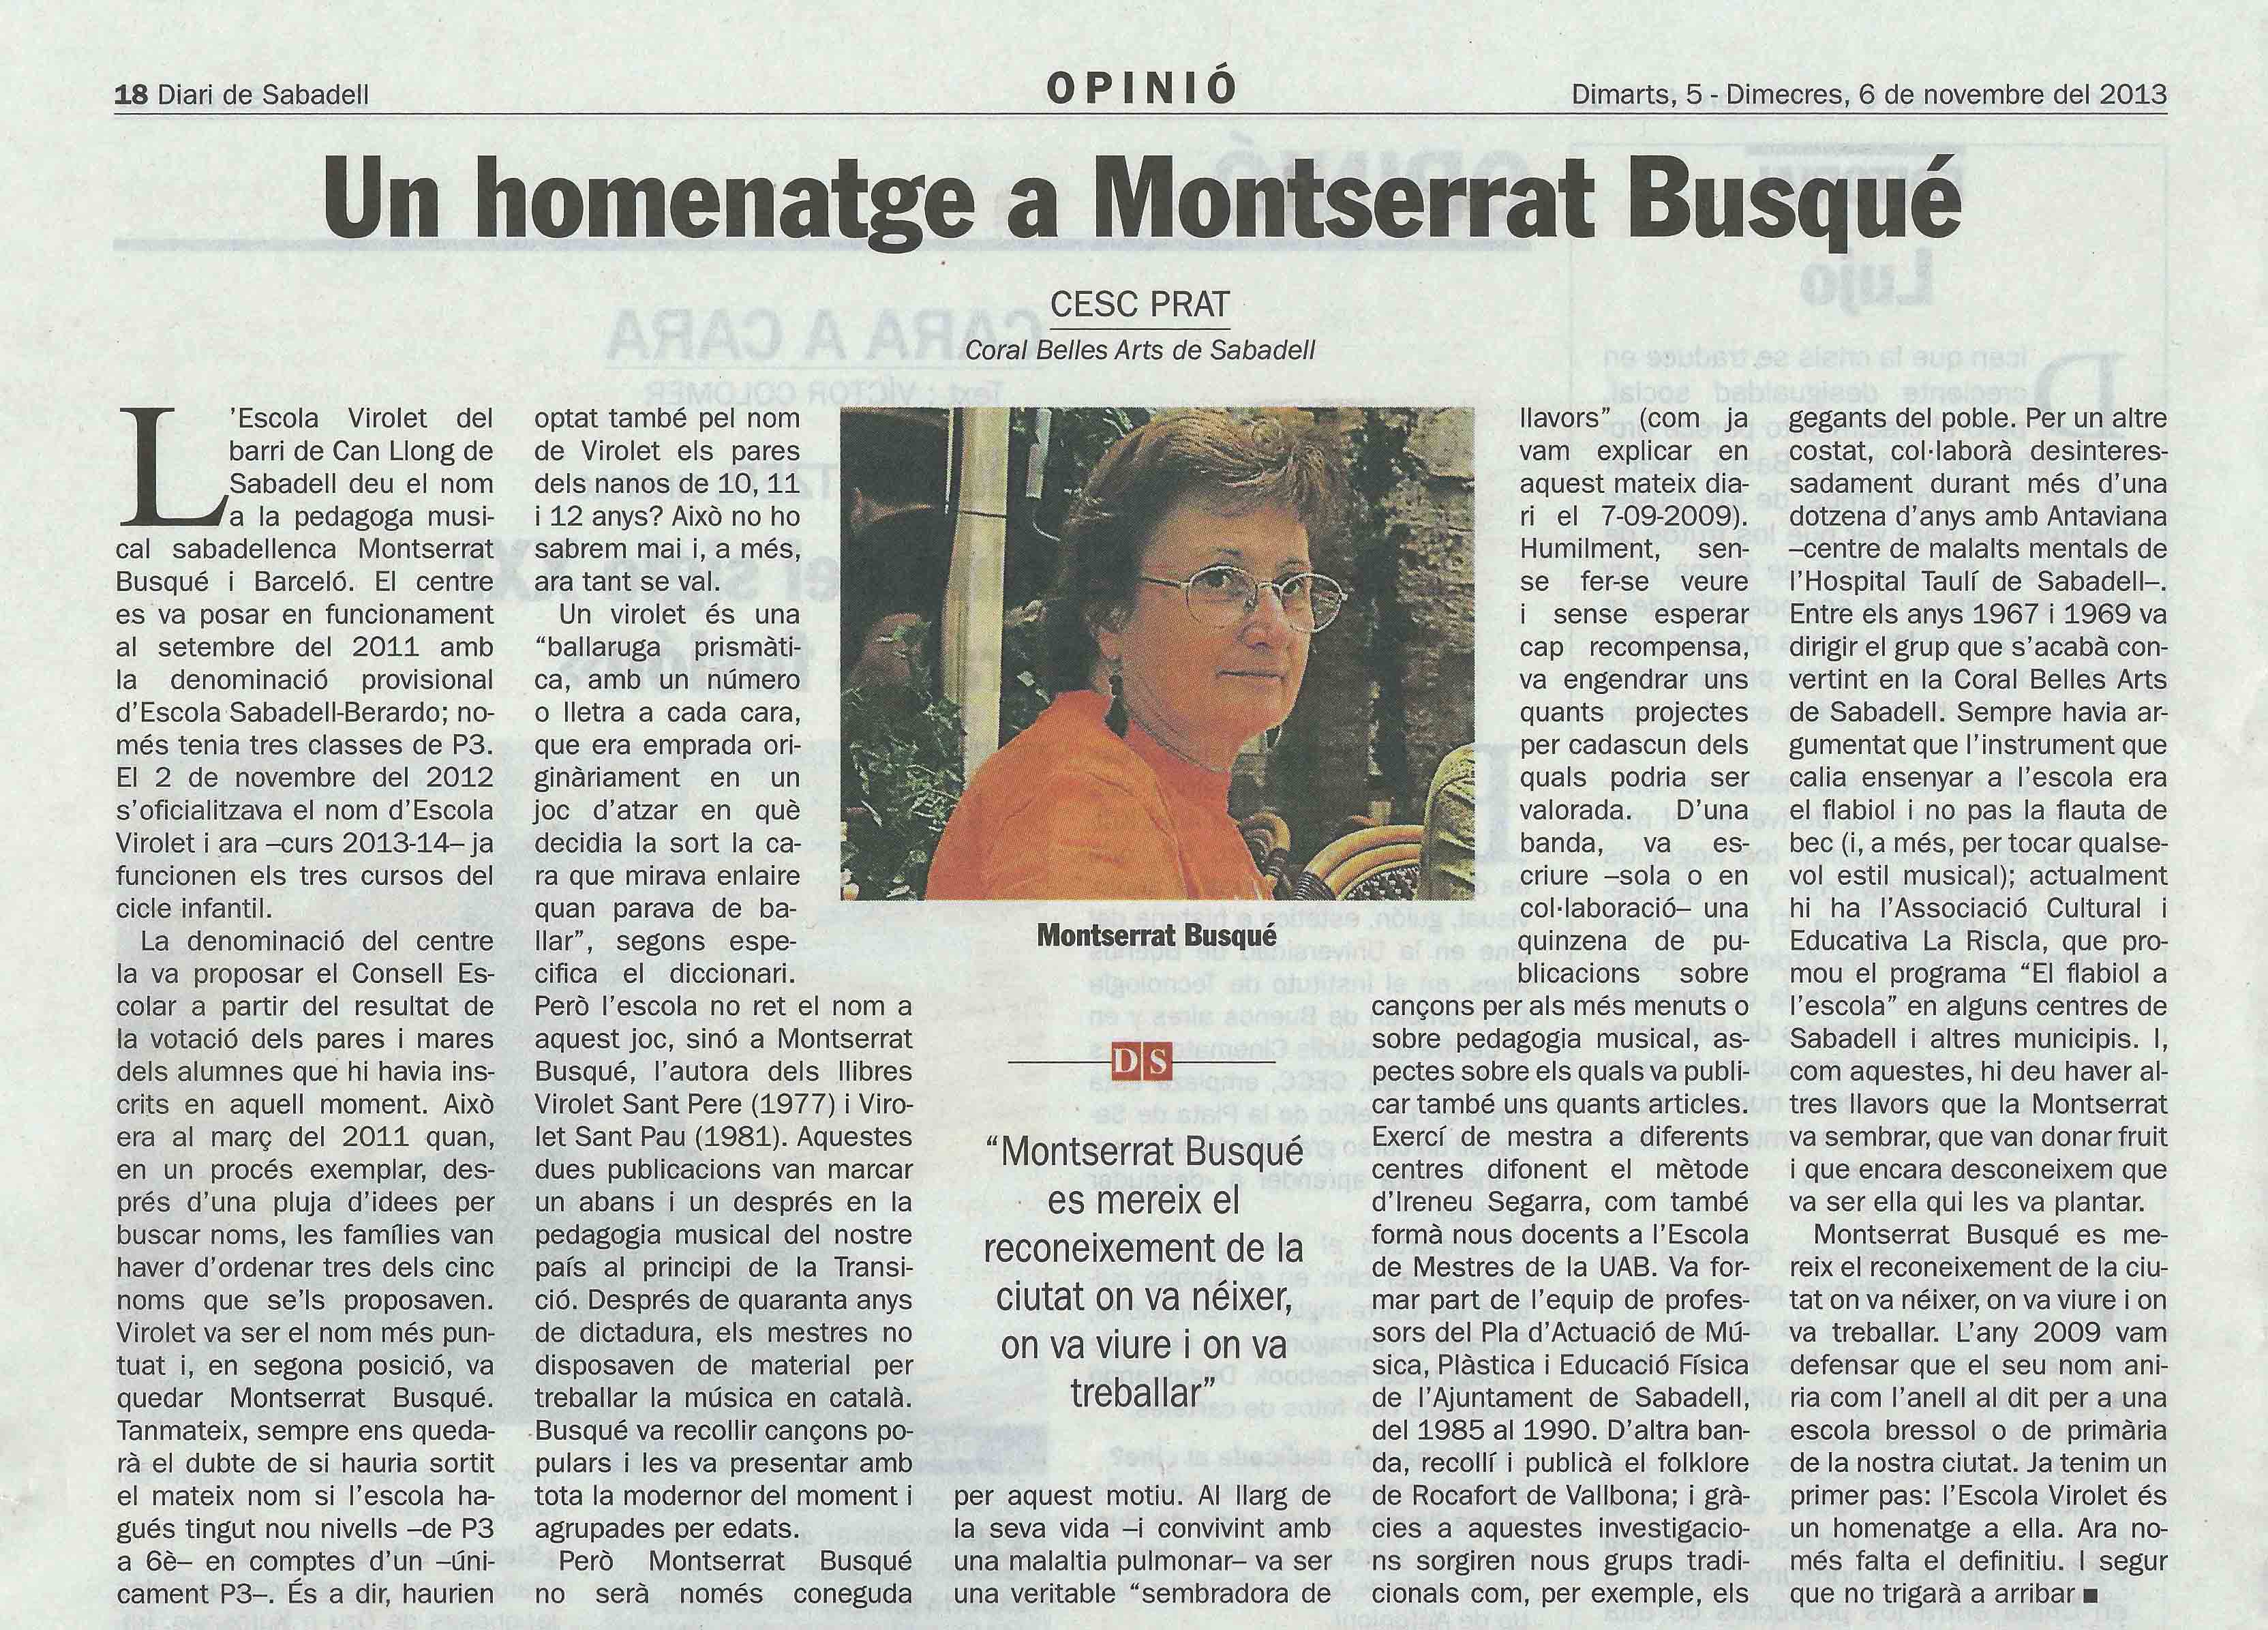 Montserrat Busqué i Escola Virolet_DS_(5.11.13)